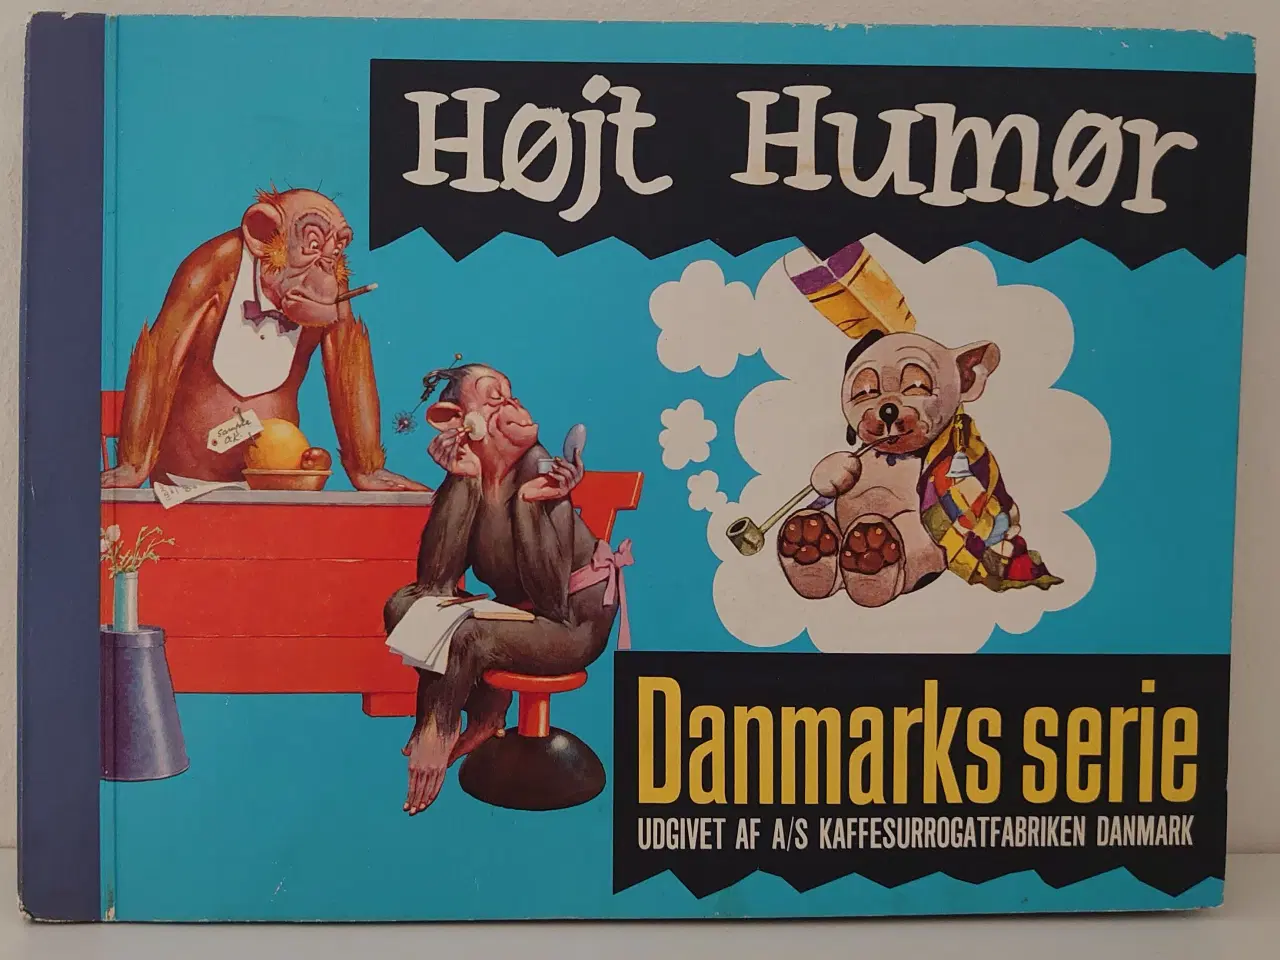 Billede 1 - Højt Humør. Samlealbum fra kaffefirmaet Danmark.